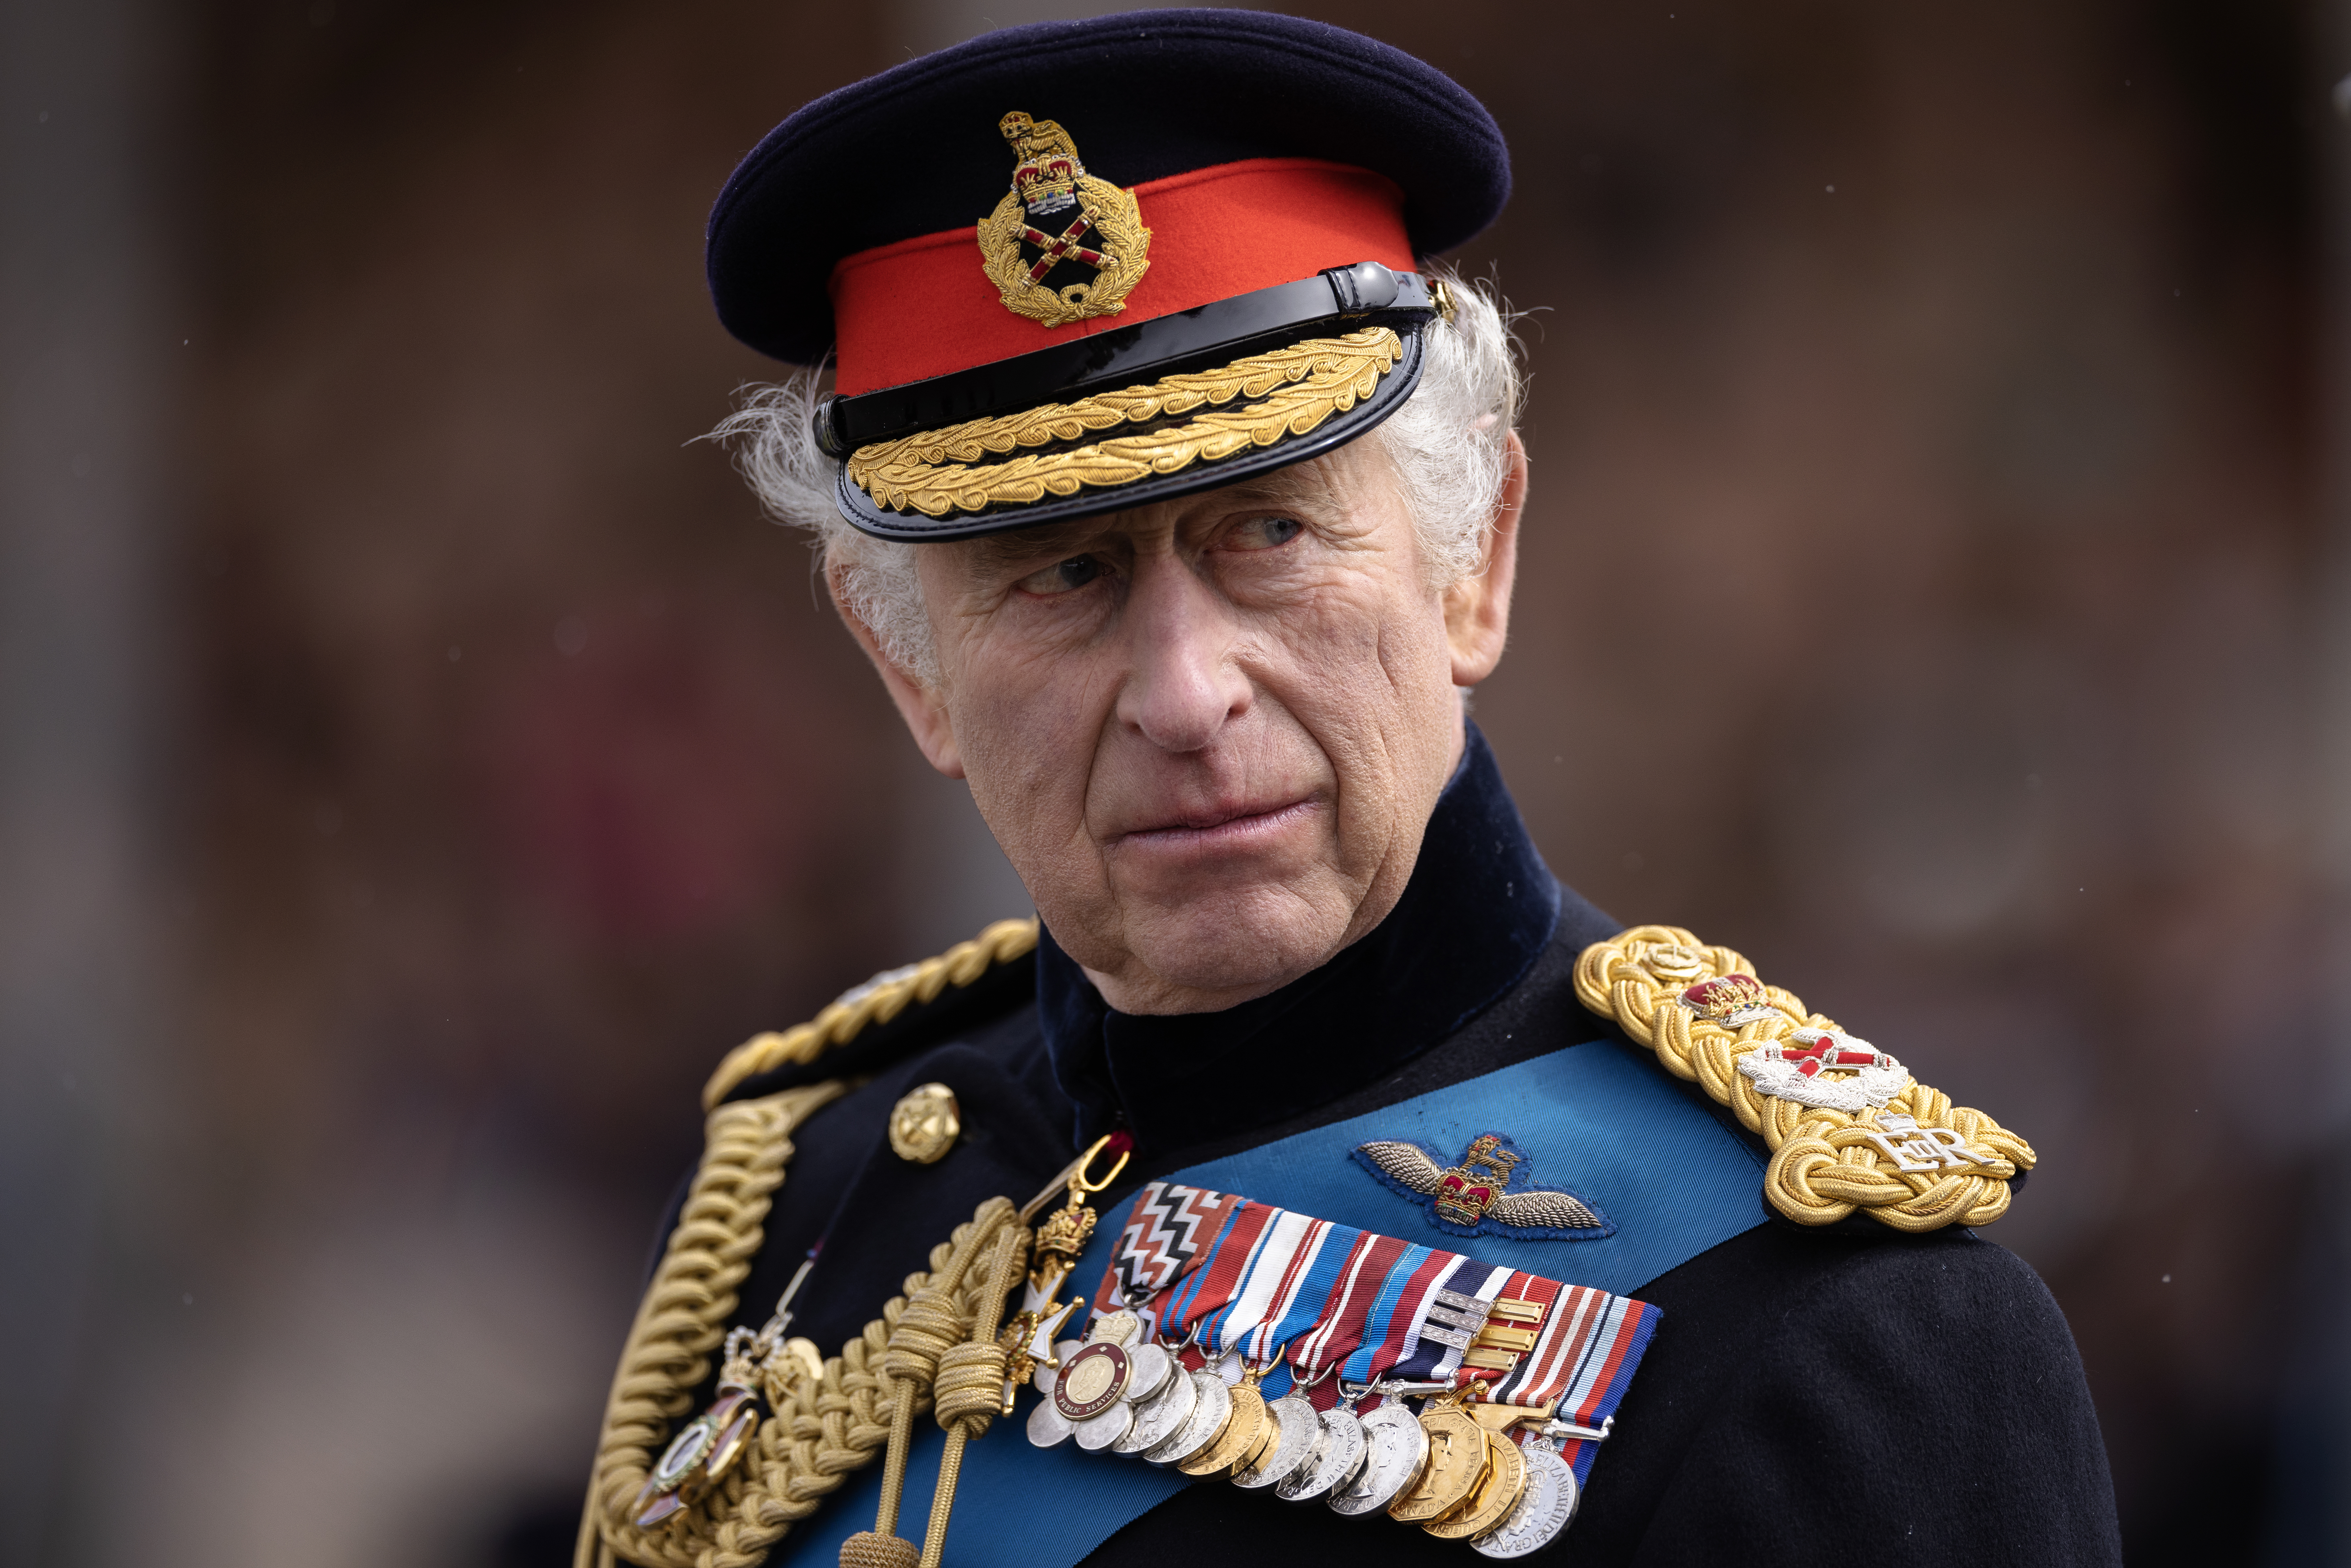 Le roi Charles III inspecte le 200e défilé du souverain à l'Académie militaire royale de Sandhurst le 14 avril 2023 à Camberley, en Angleterre | Source : Getty Images